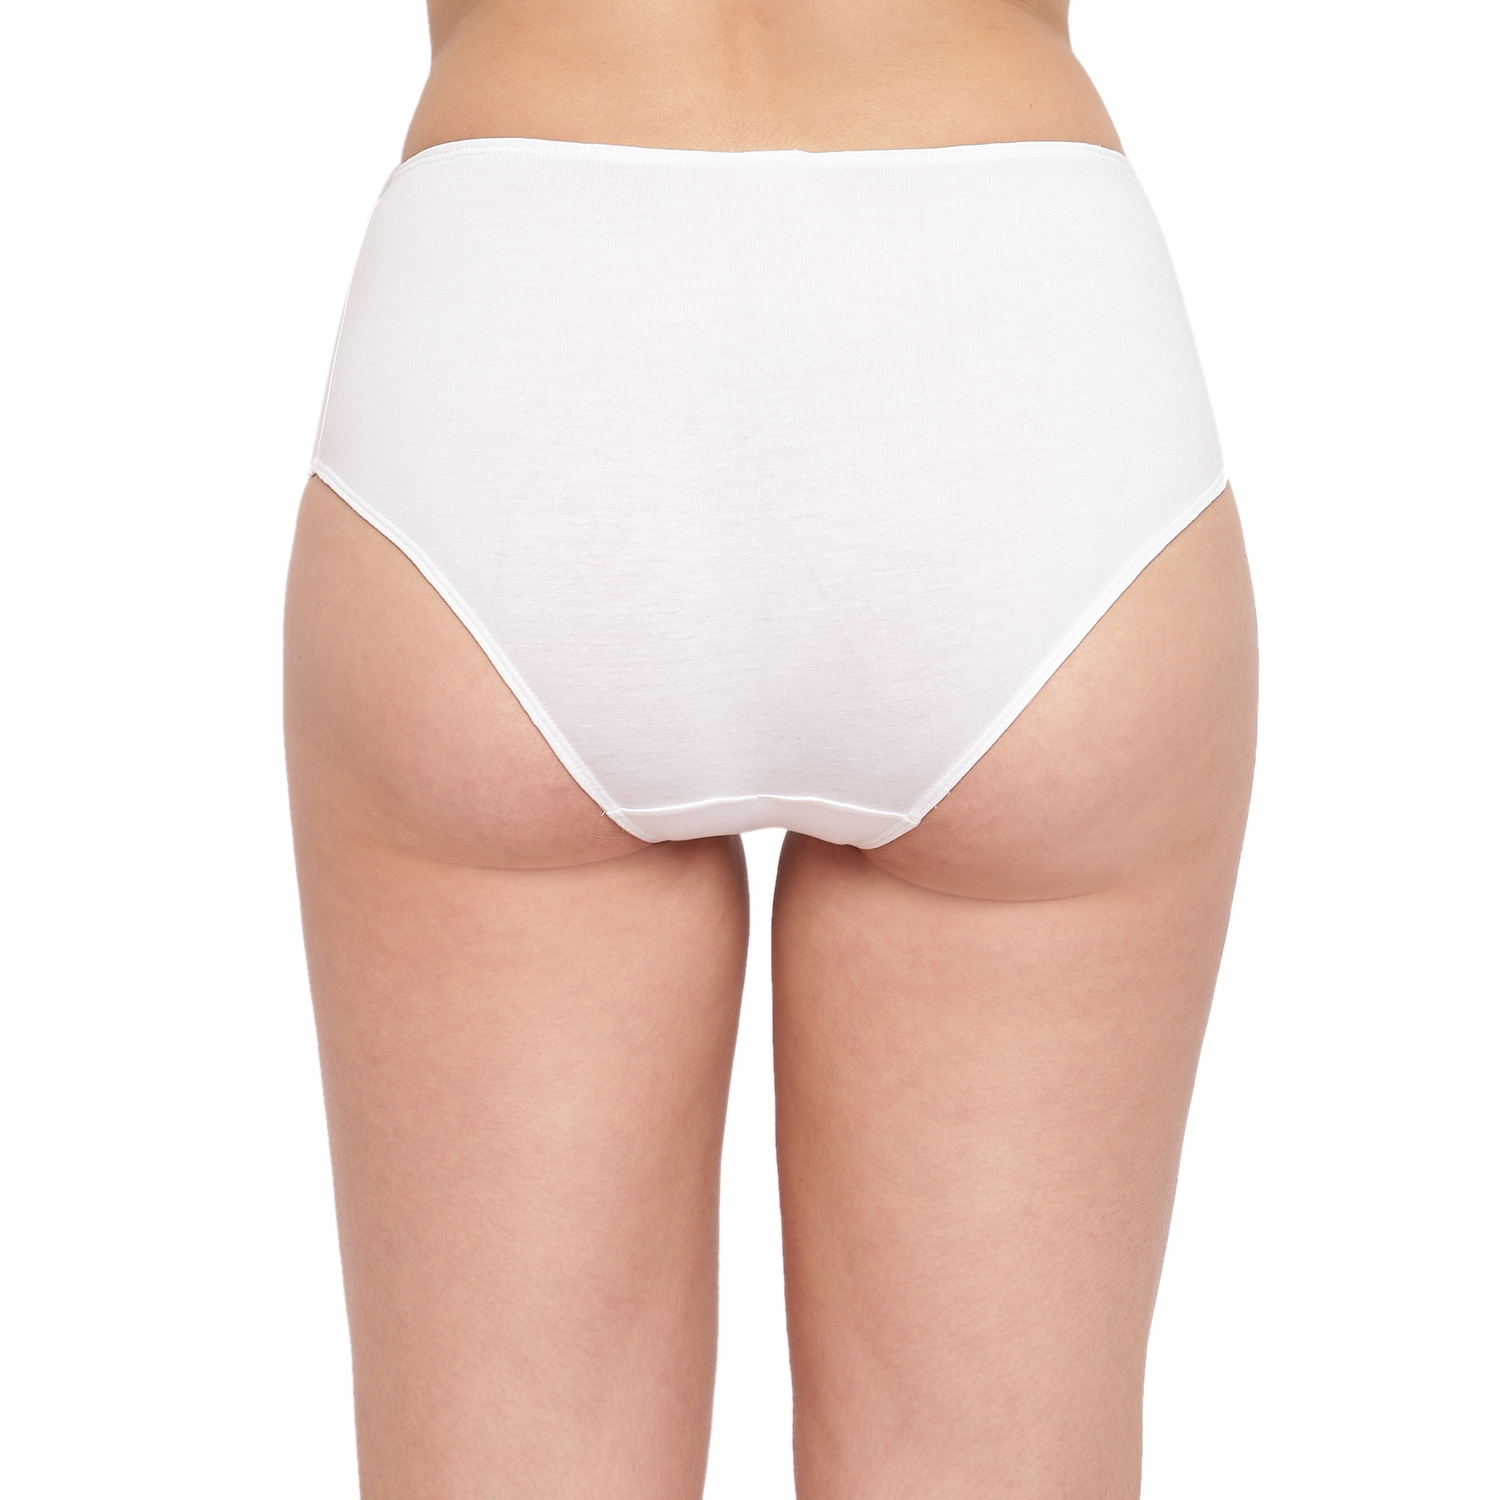 BASIICS by La Intimo | White Grace Well Bikini Panty Pack of 3 4